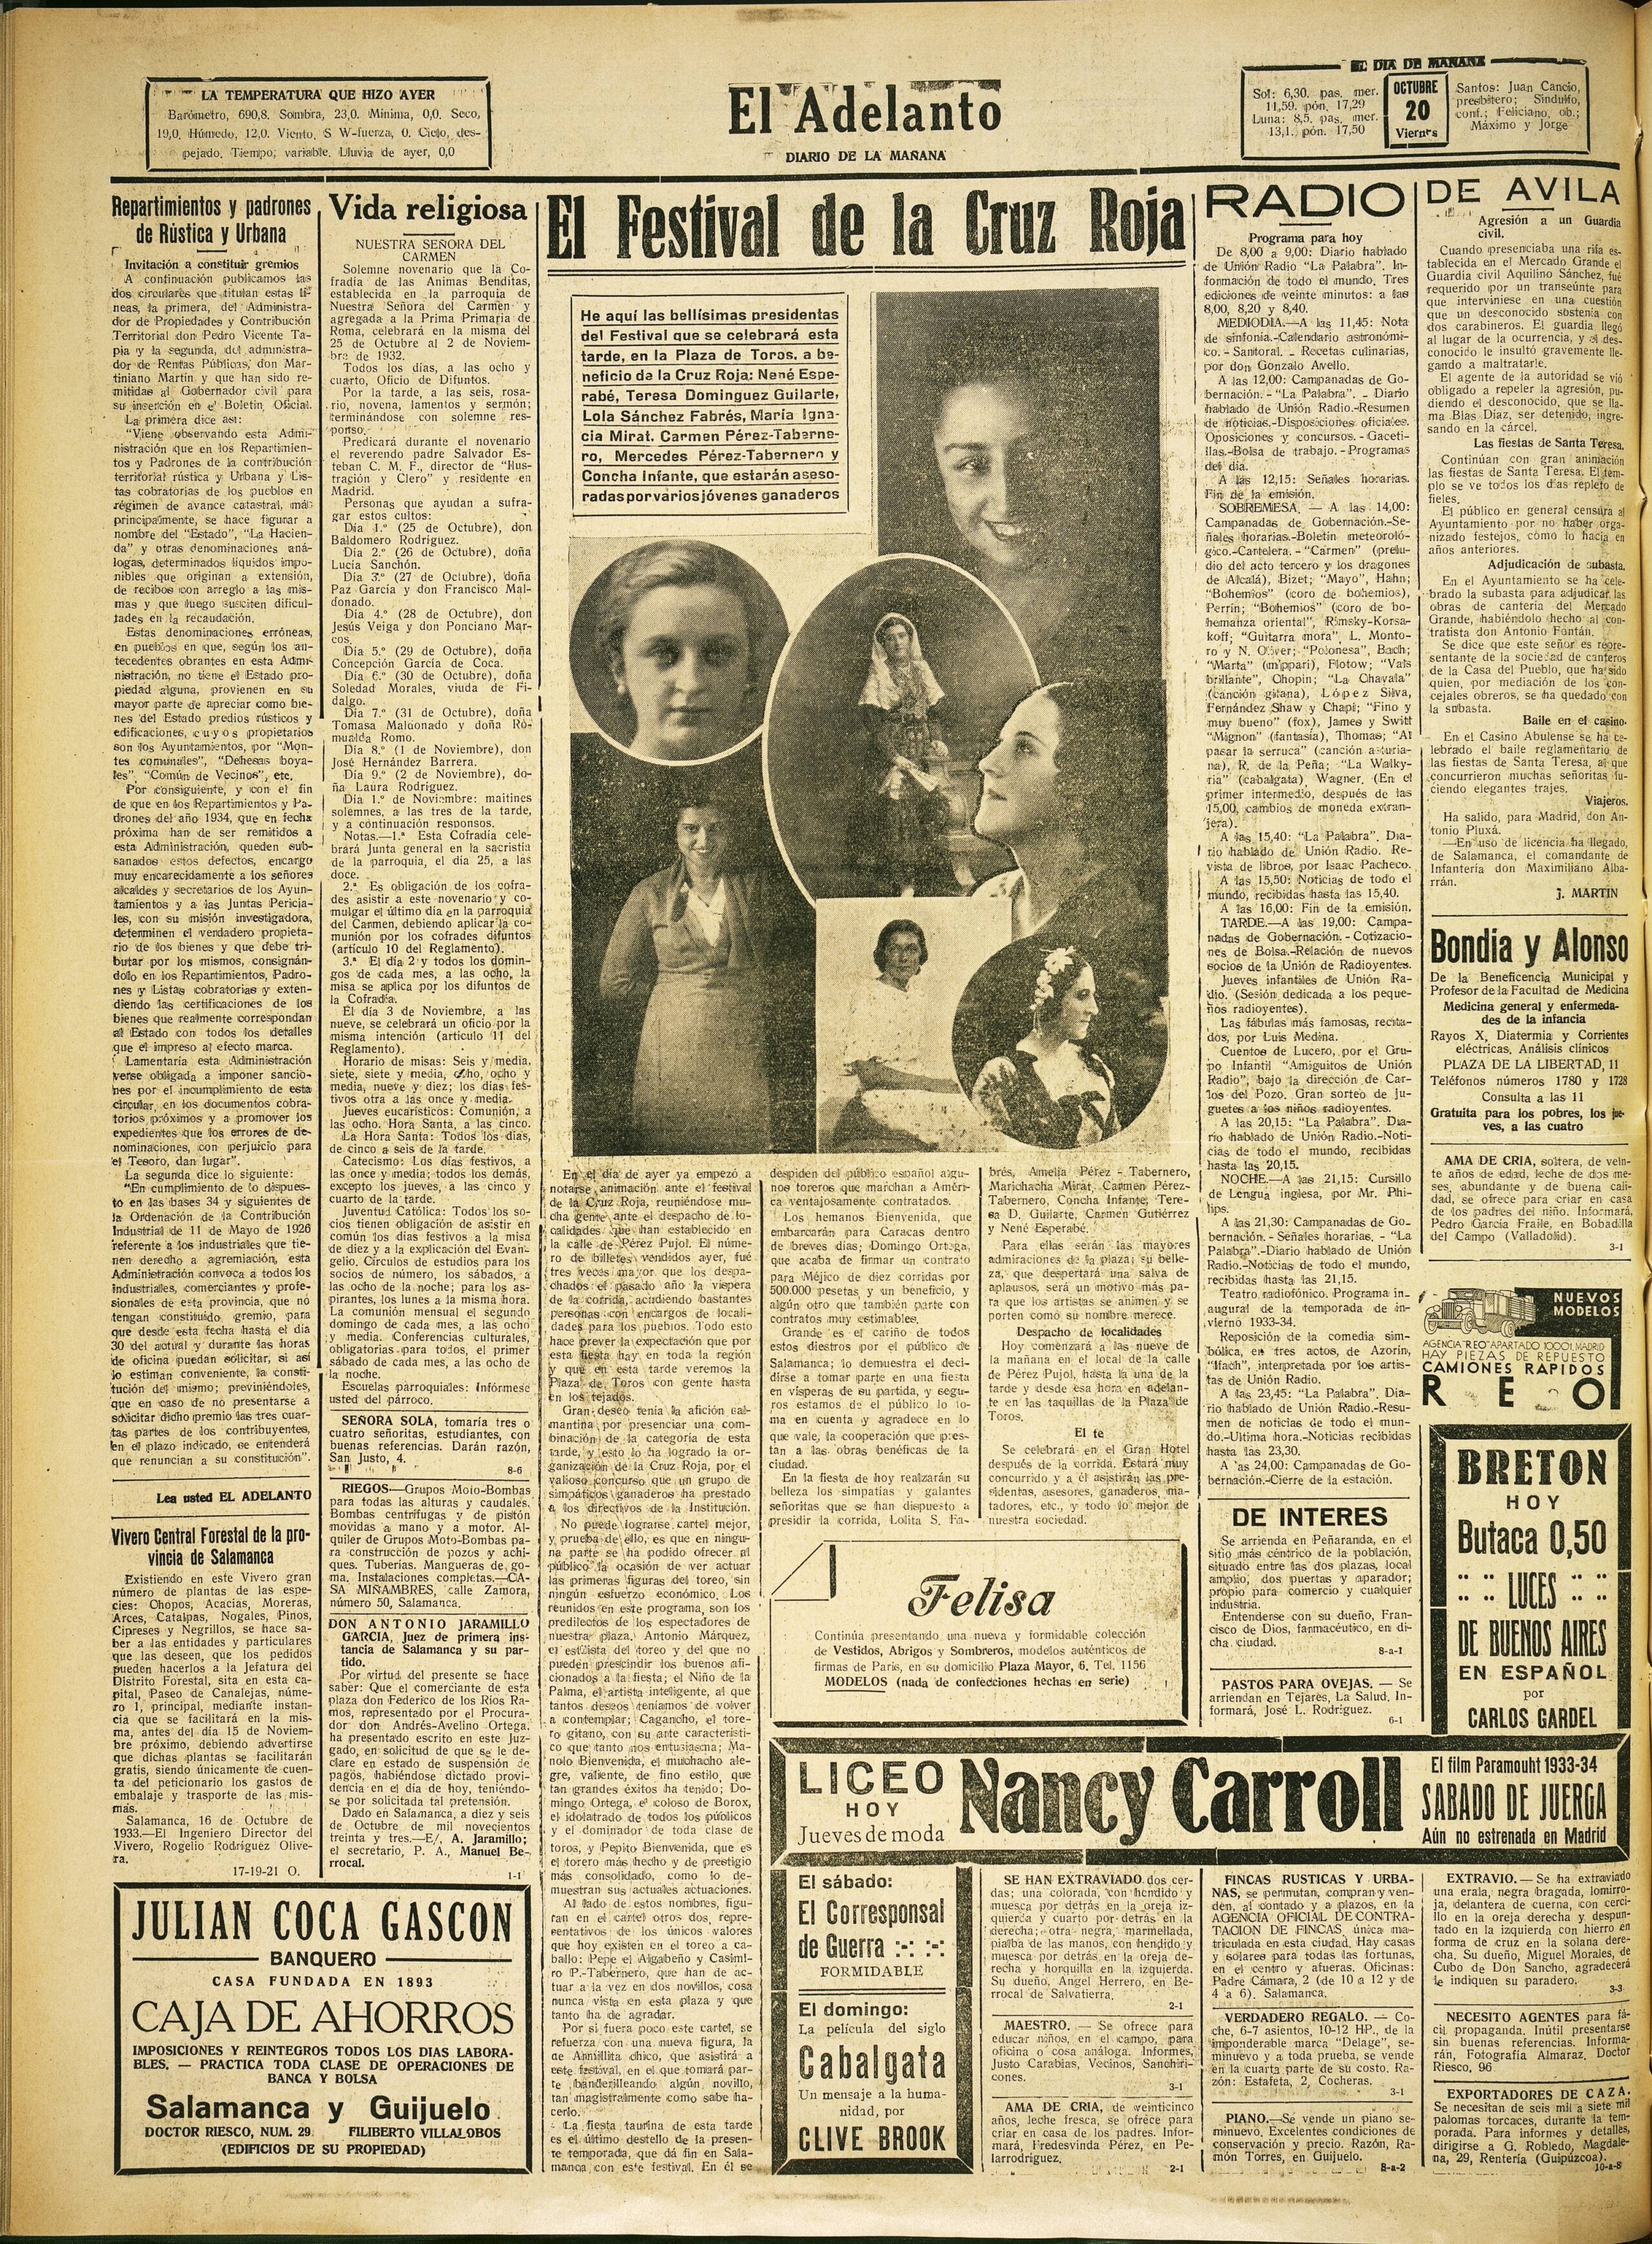 Periódico El Adelanto. Viernes 20 de octubre de 1933. El anuncio aparece en el lateral derecho.